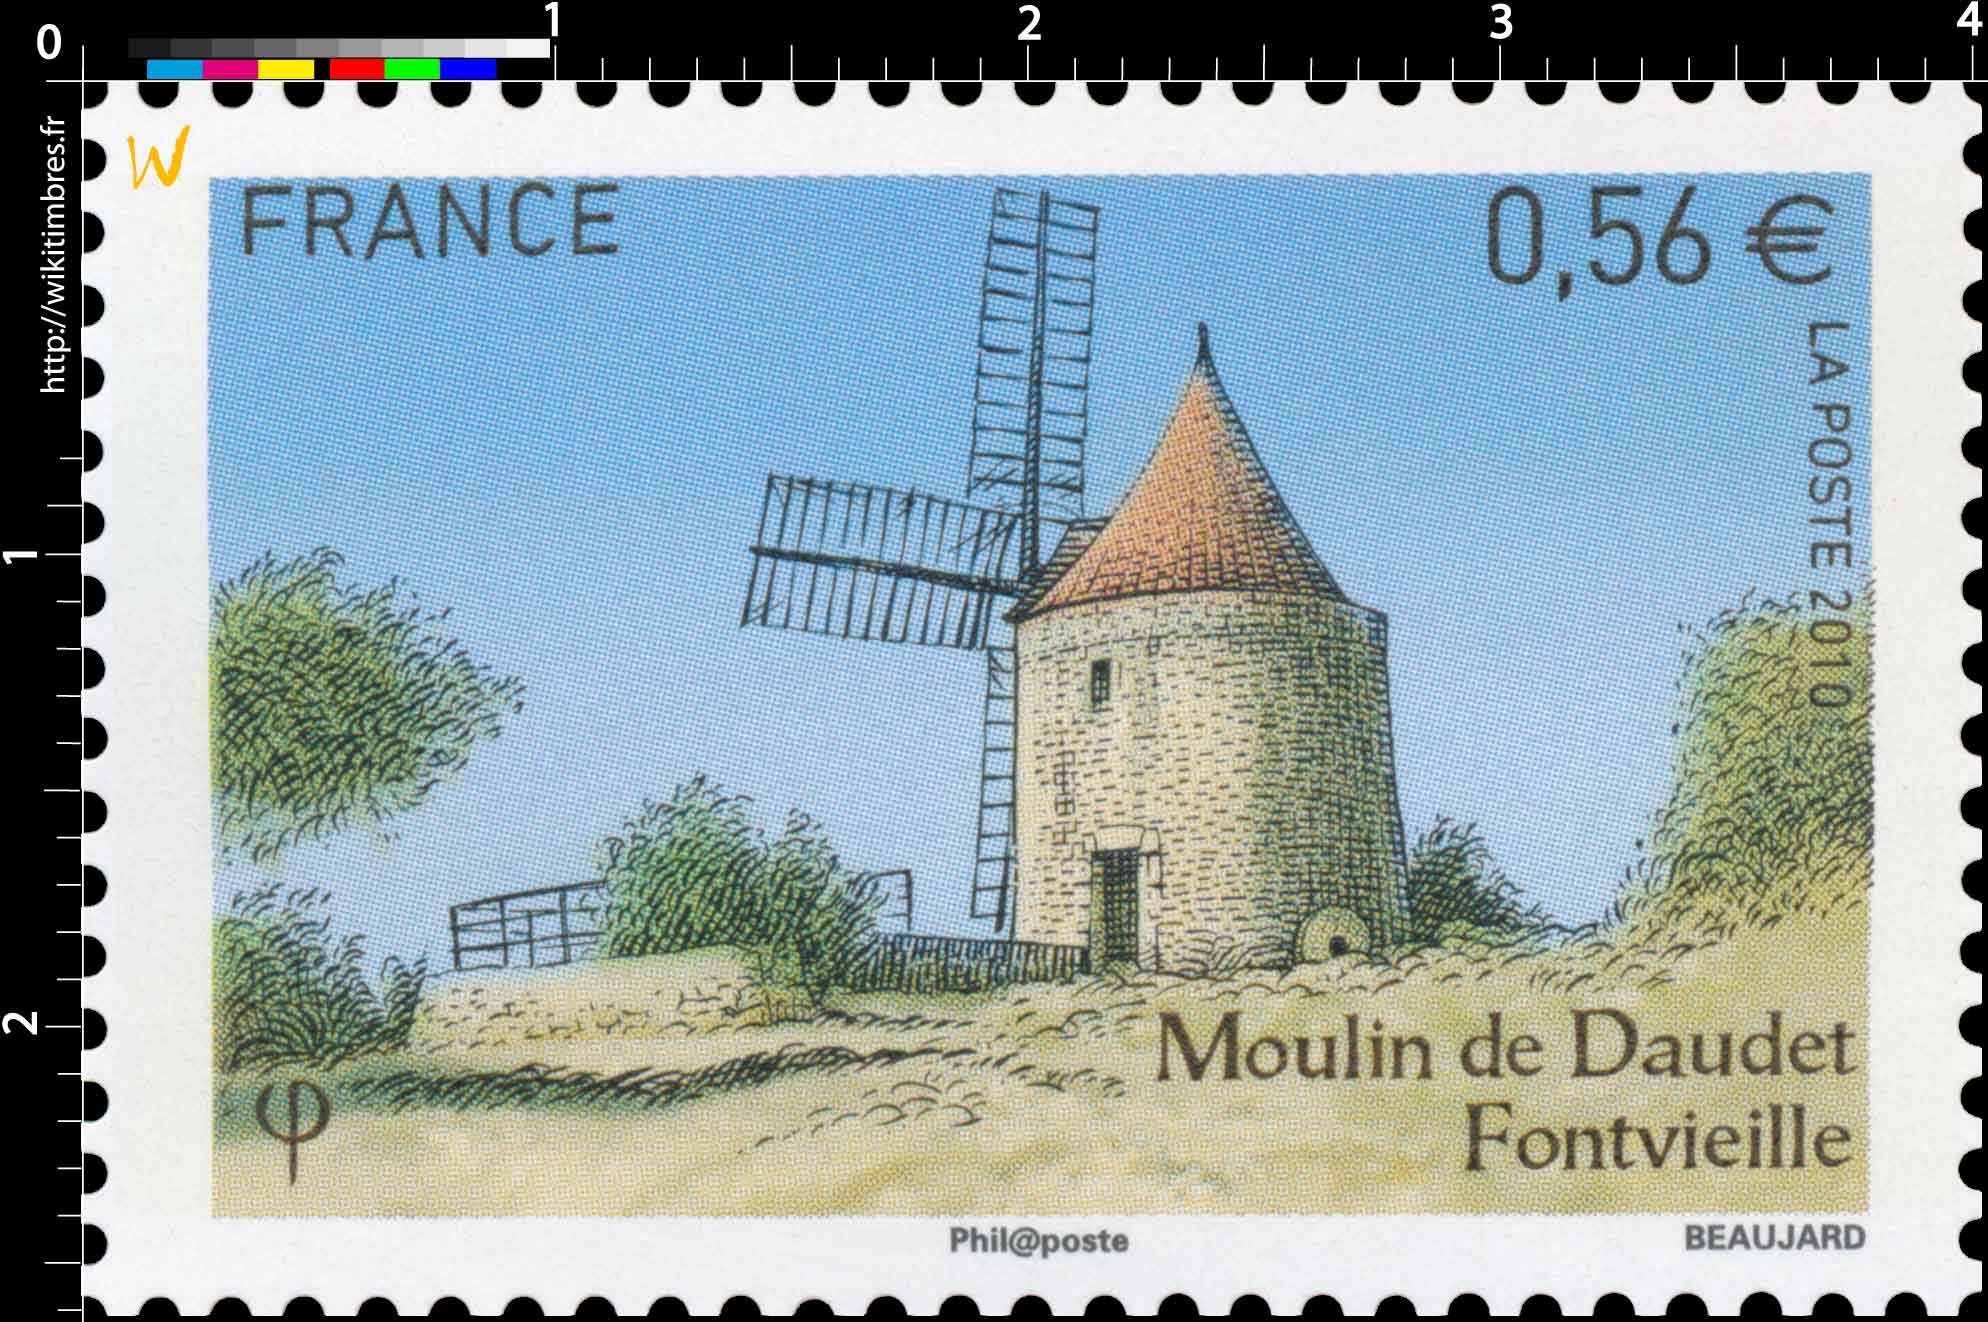 2010 Moulin de Daudet Fontvieille